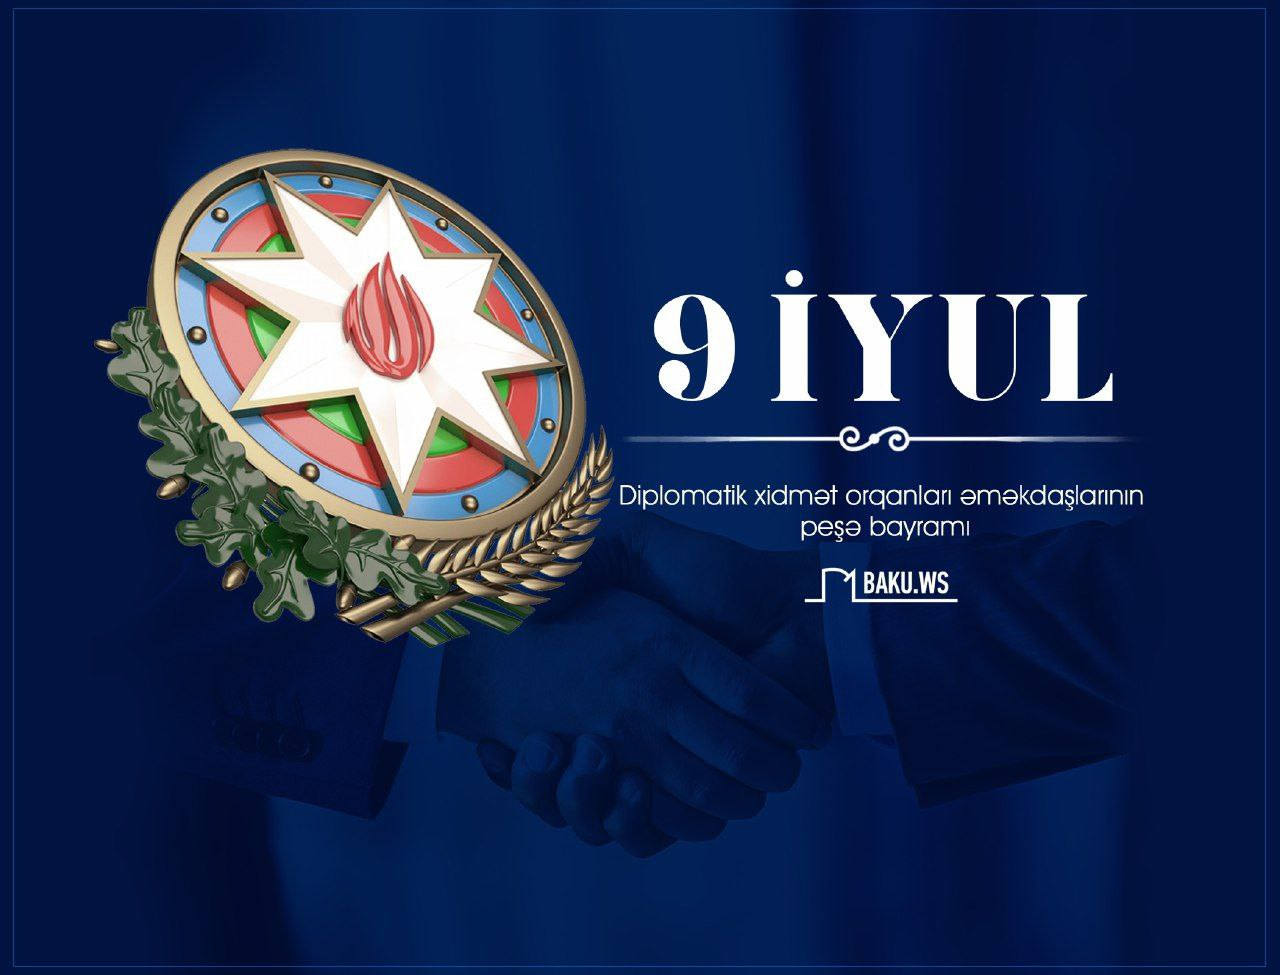 9 iyul - Azərbaycan diplomatik xidmət orqanları əməkdaşlarının peşə bayramı günüdür